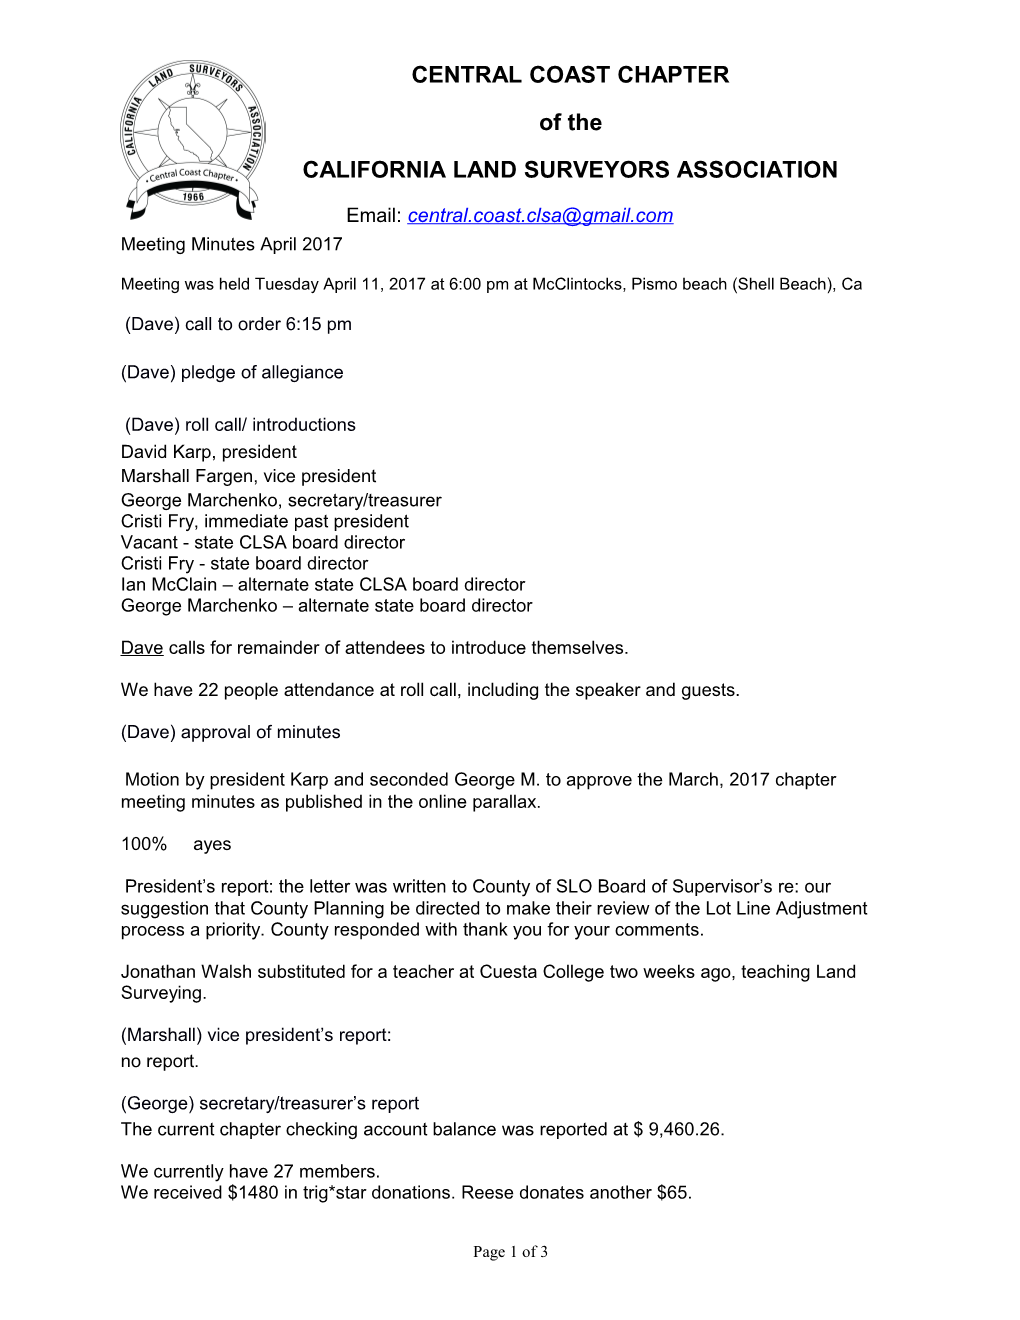 California Land Surveyors Association